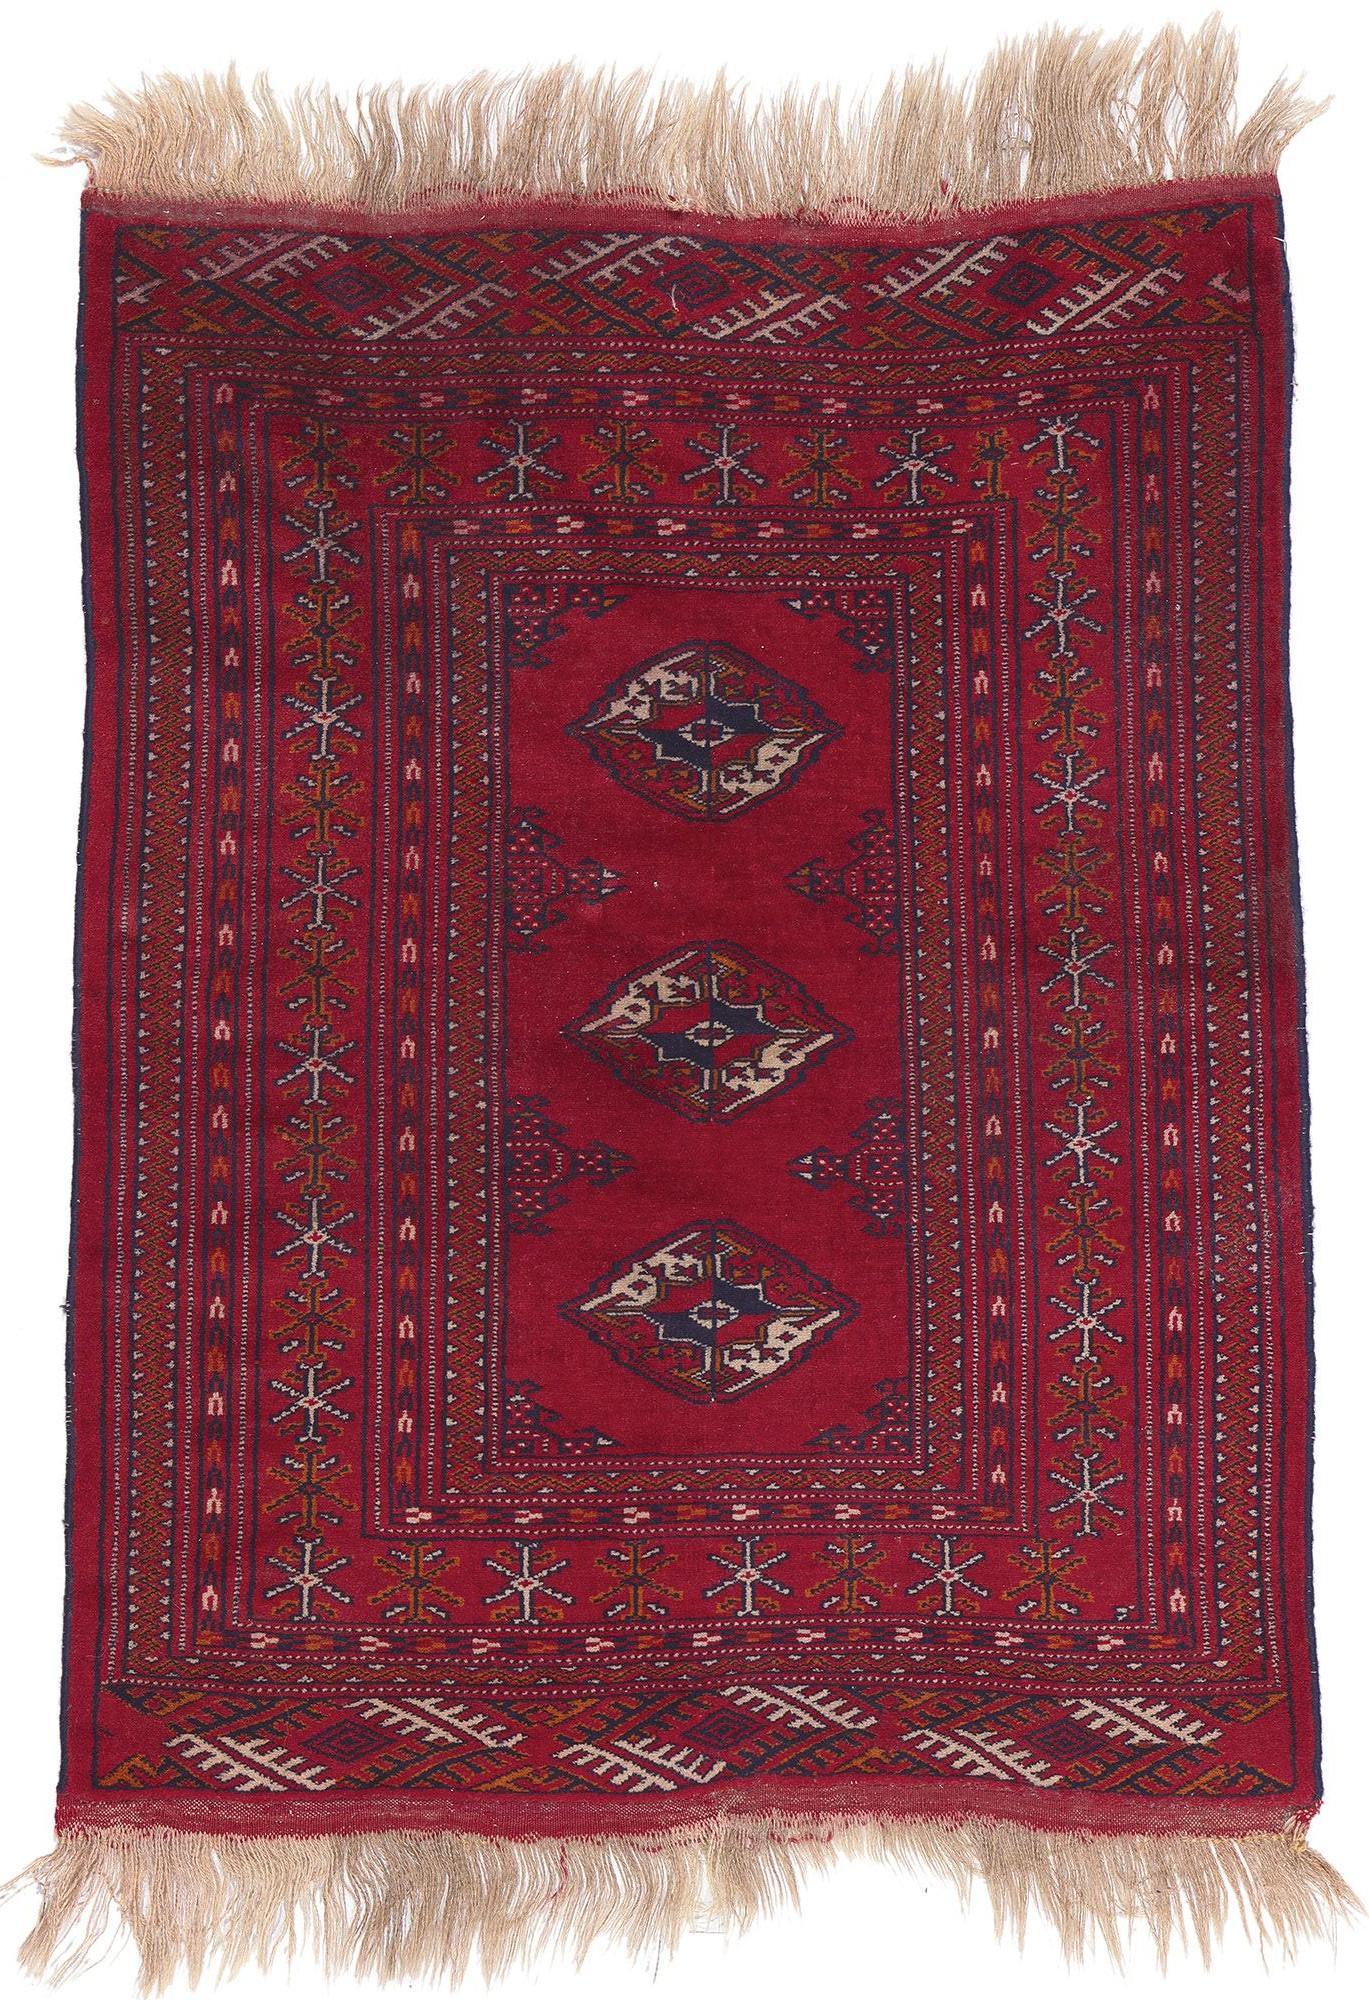 Persischer Turkoman-Teppich im Vintage-Stil, Dunkel- und Moody Nomad trifft Stammeskunst-Enchantment